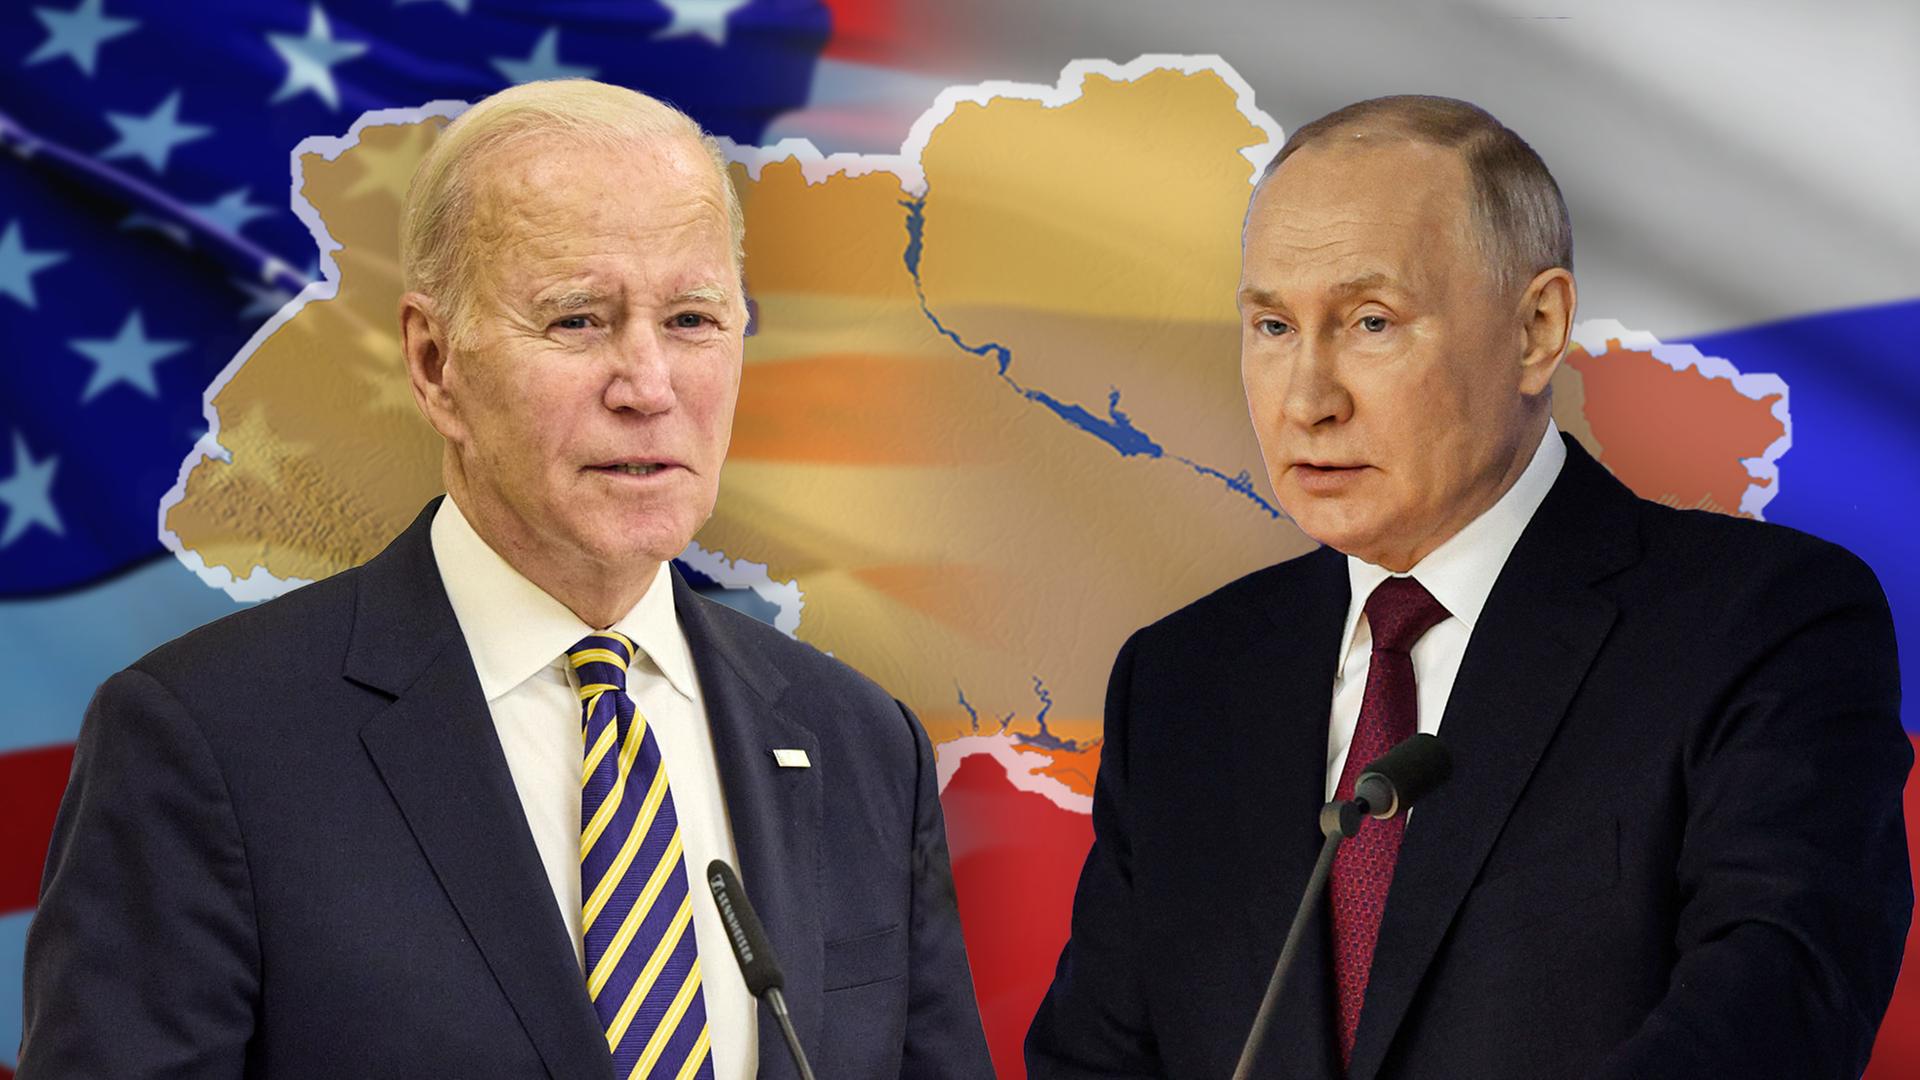 Links eine US-Flagge, rechts eine russische Flagge. Darüber liegt eine Ukraine-Karte. Im Vordergrund: Joe Biden (links) und Wladimir Putin (rechts)